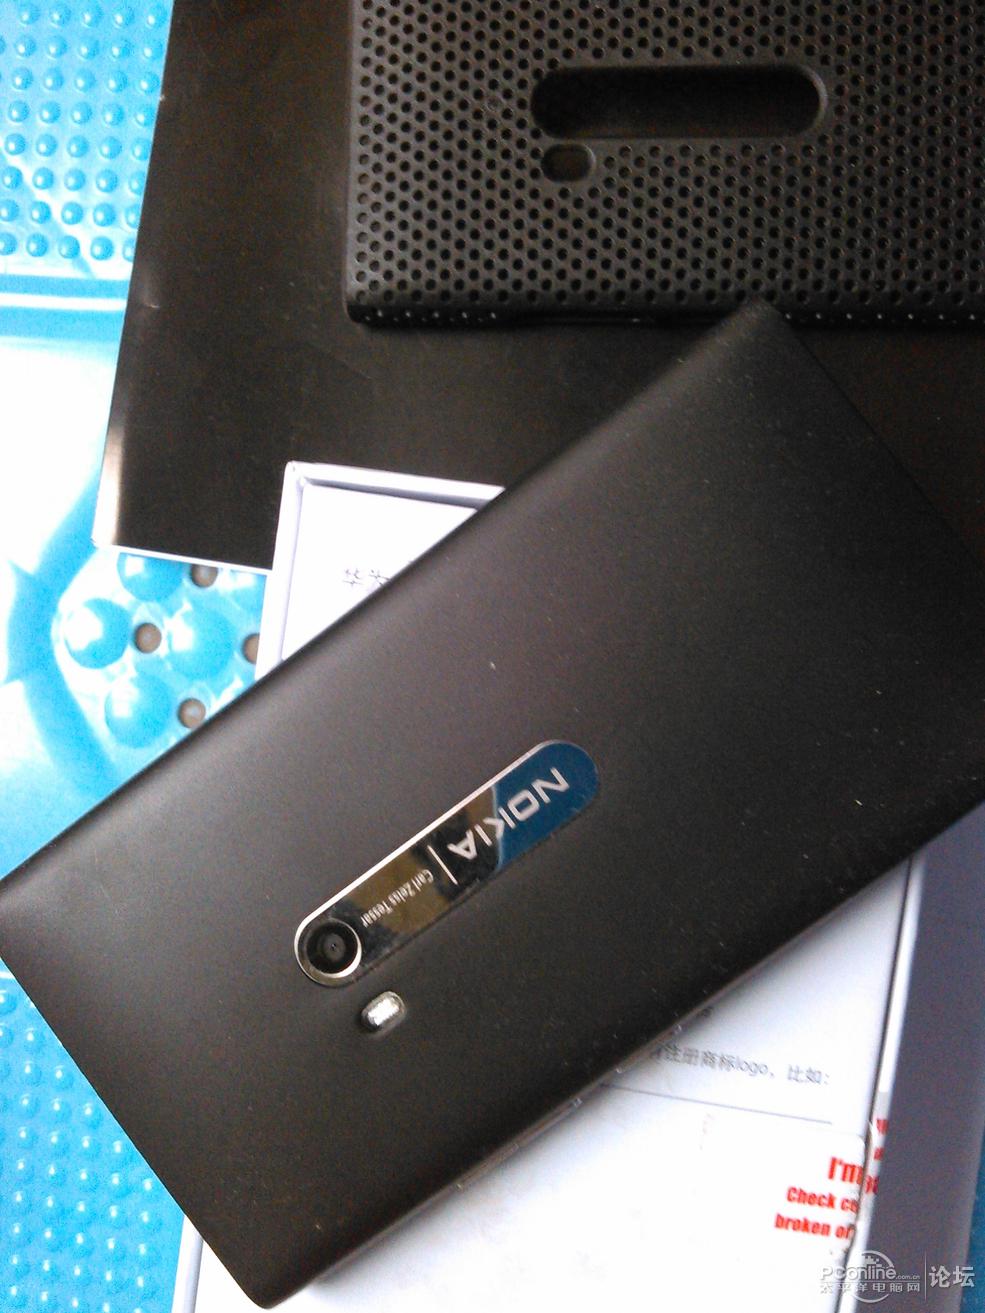 出手诺基亚N9,换部win8系统的手机耍耍,非诚勿